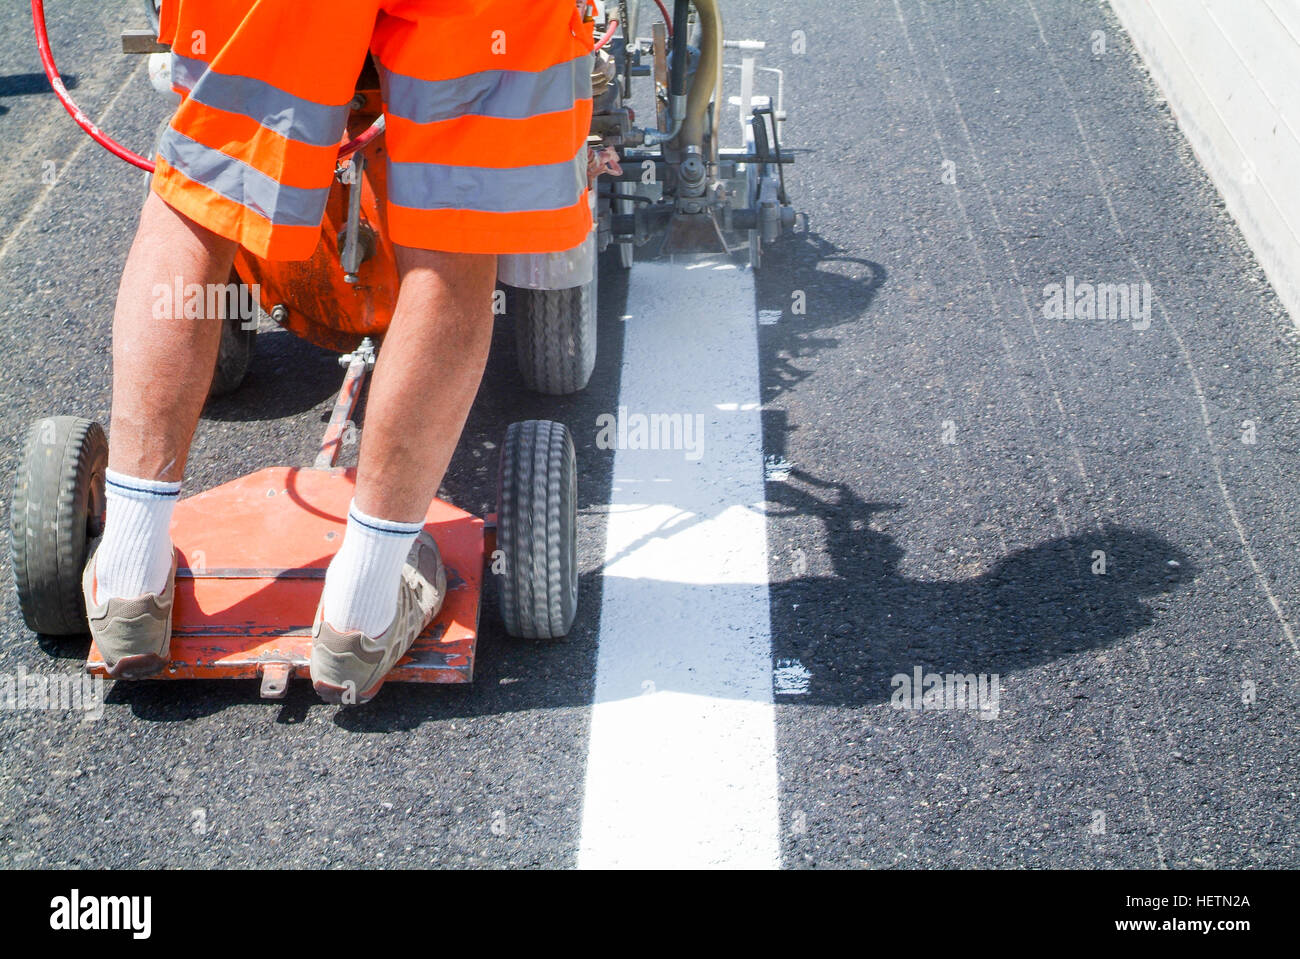 Bissone, Schweiz - 20. Juni 2011: Maschine ausgeworfen und Arbeiter auf der Straße und Verkehr melden Malerei Stockfoto